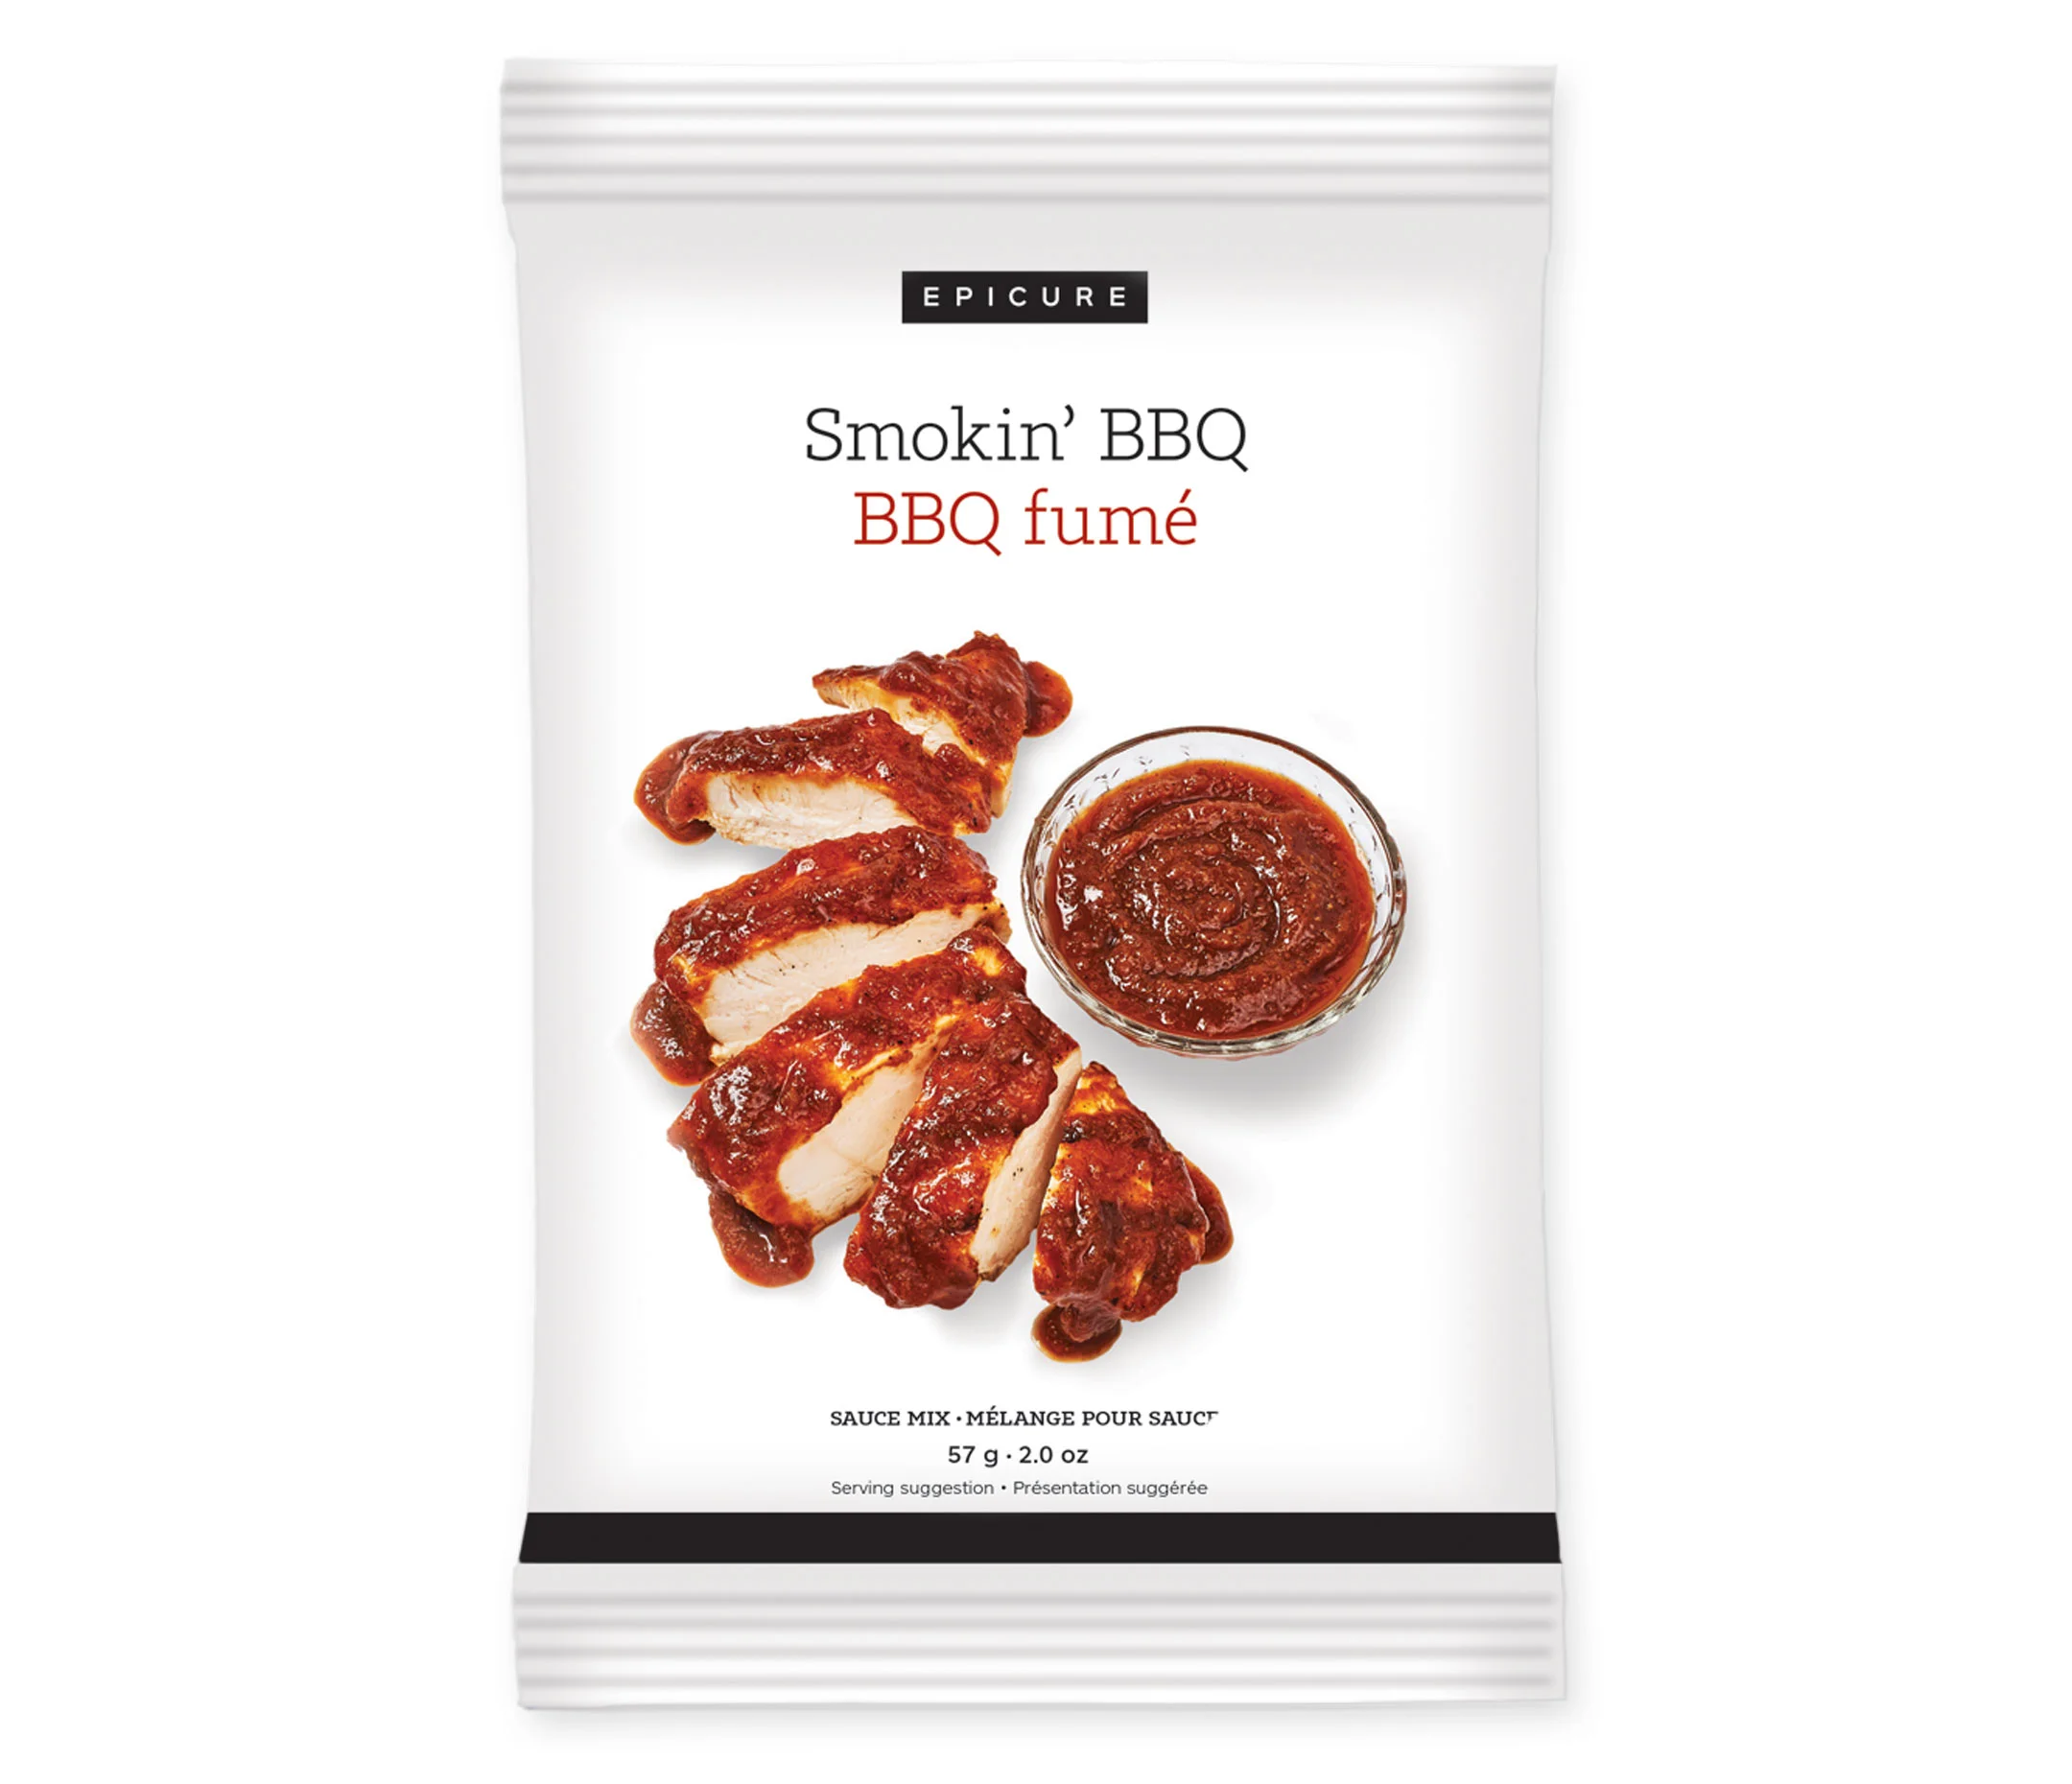 Smokin' BBQ Sauce Mix (Pack of 3)